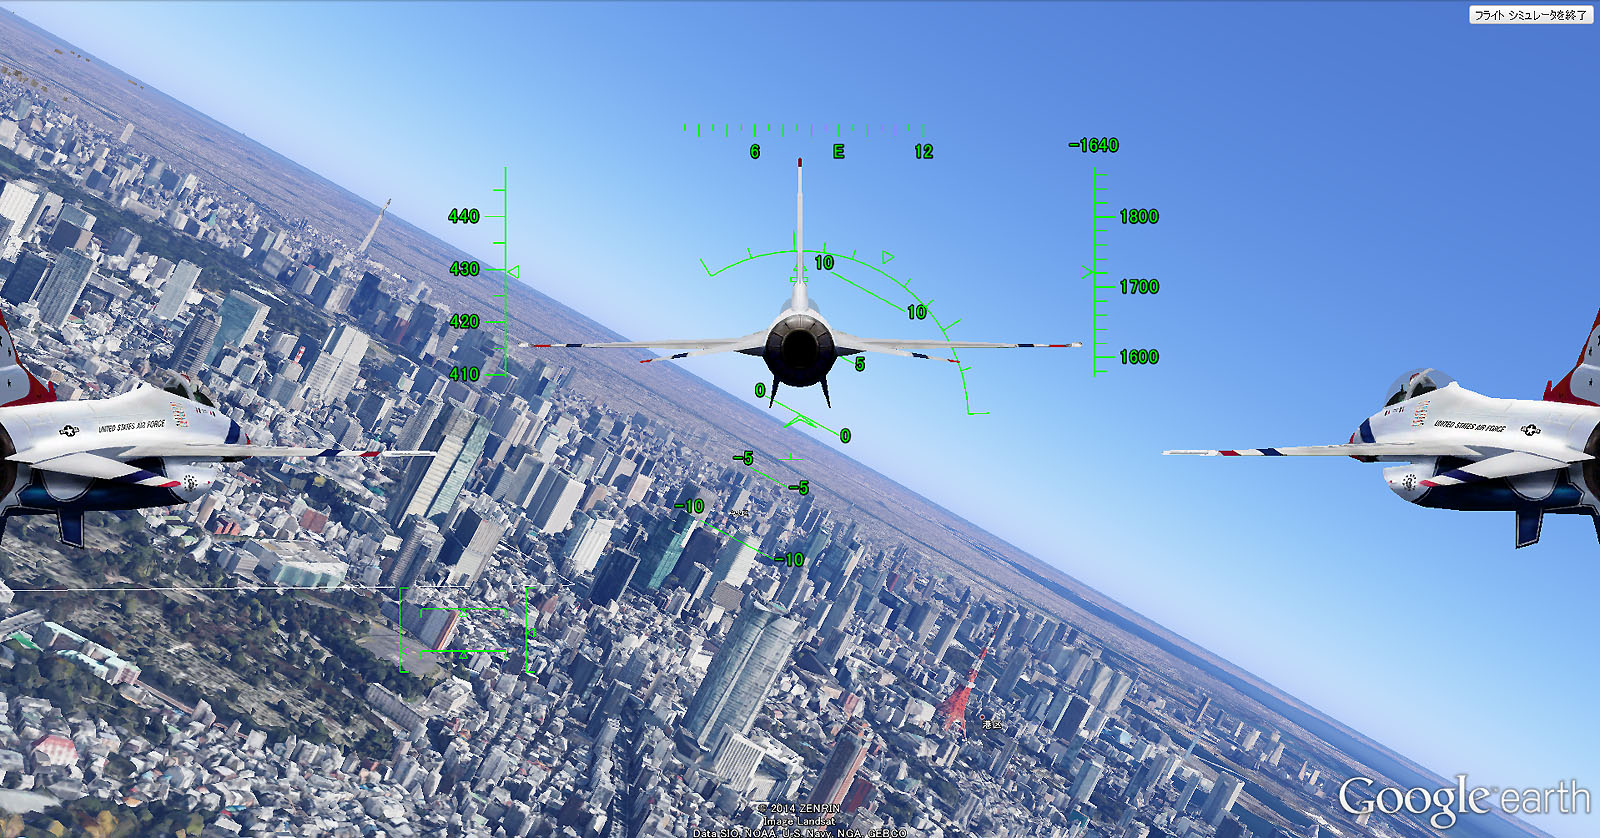 アドオンの作り方 ブルーインパルス グーグルフライトシュミレーター ジョイスティックの設定方法 着陸方法 操作 Hudの見方 航空自衛隊 F 16 サンダーバーズ F16 Thunderbirds F 15イーグル グーグルアース イースターエッグ ストリートビュー Googleearth